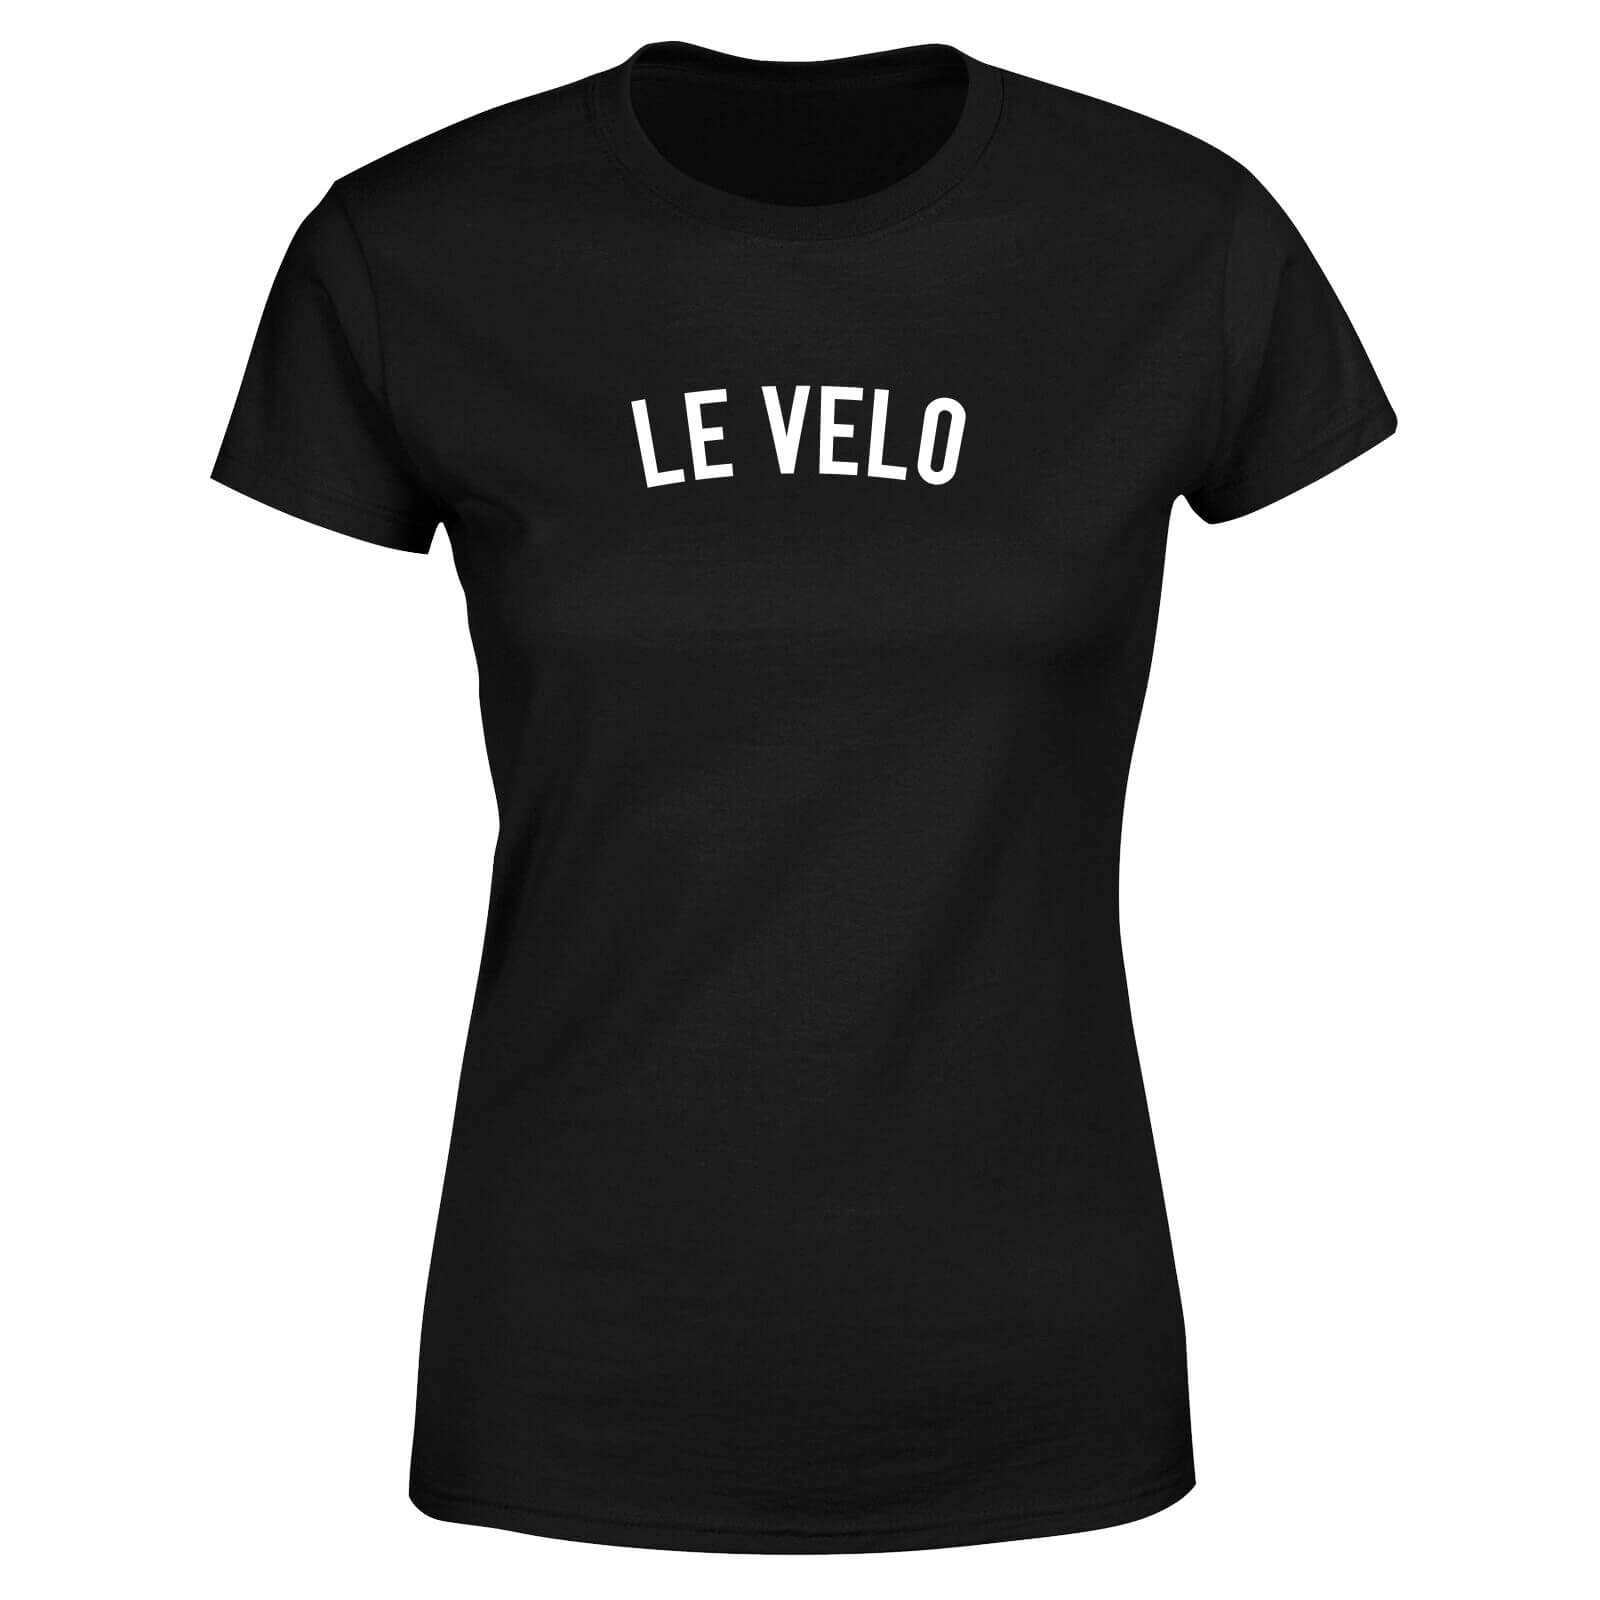 Le Velo Women's T-Shirt - Black - 5XL - Black